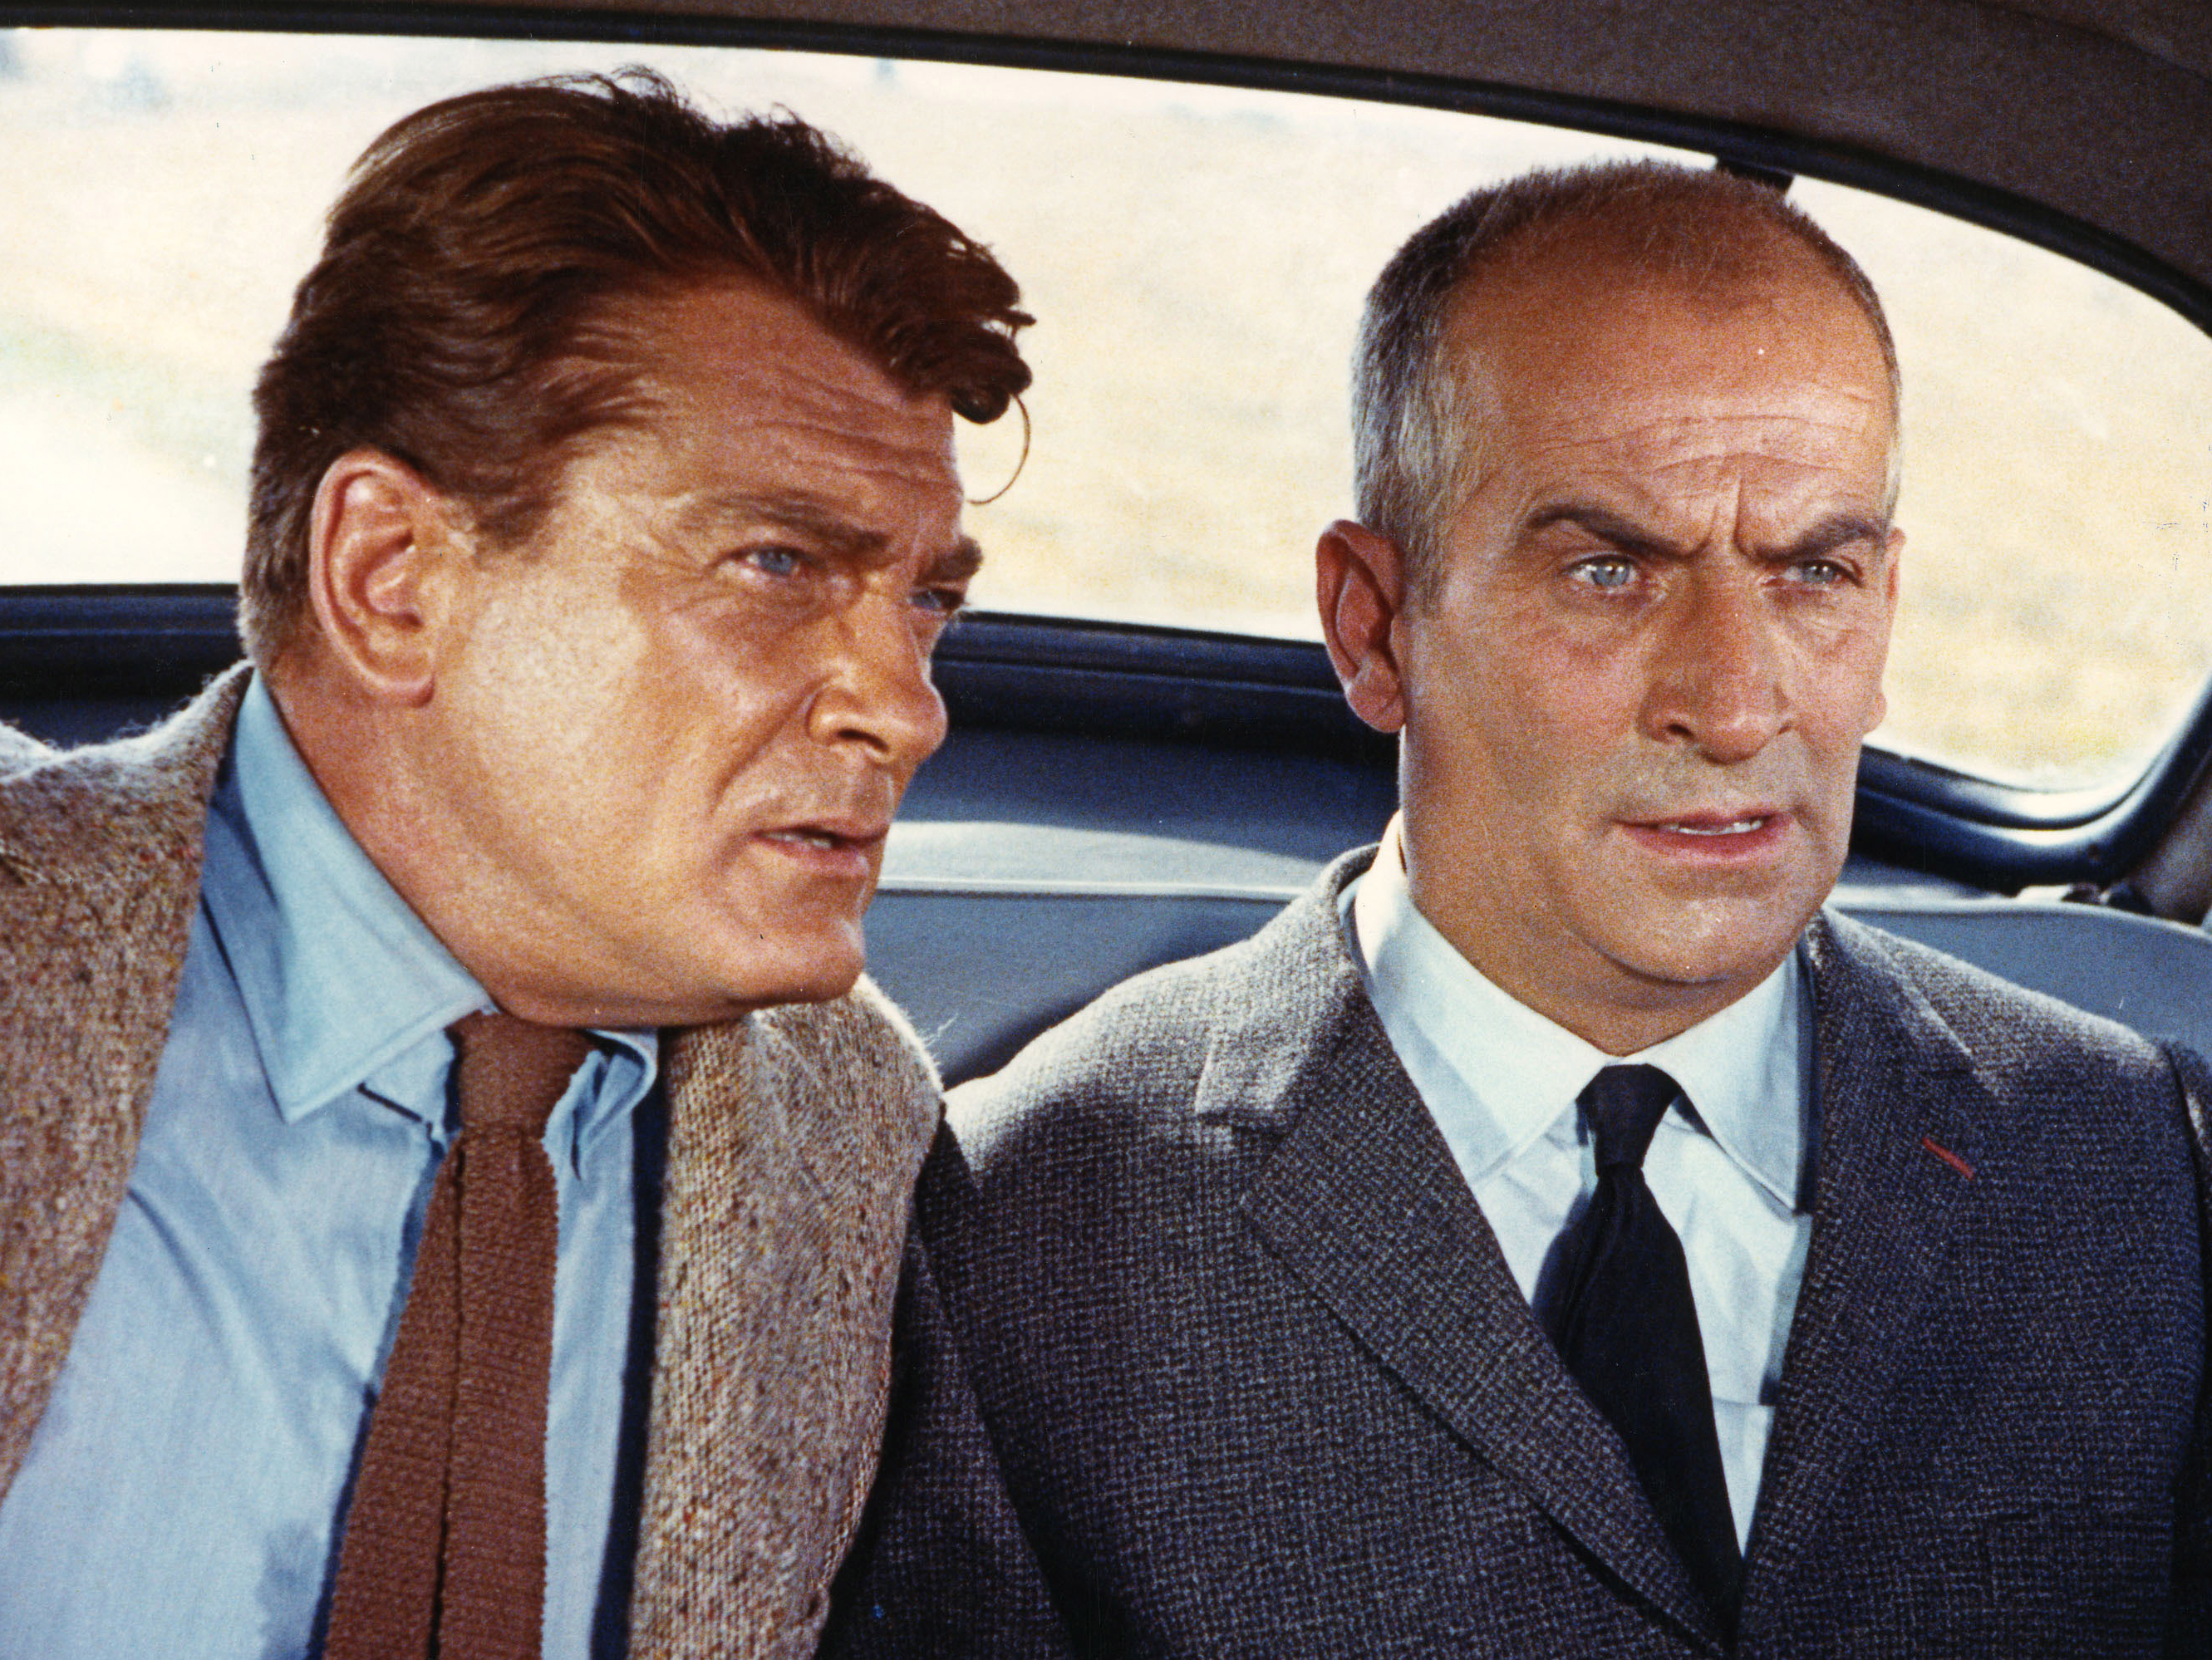 People 2662x1998 men actor movies Fantomas Jean Marais French vintage film stills suits car interior tie 1960s blue eyes Louis de Funès